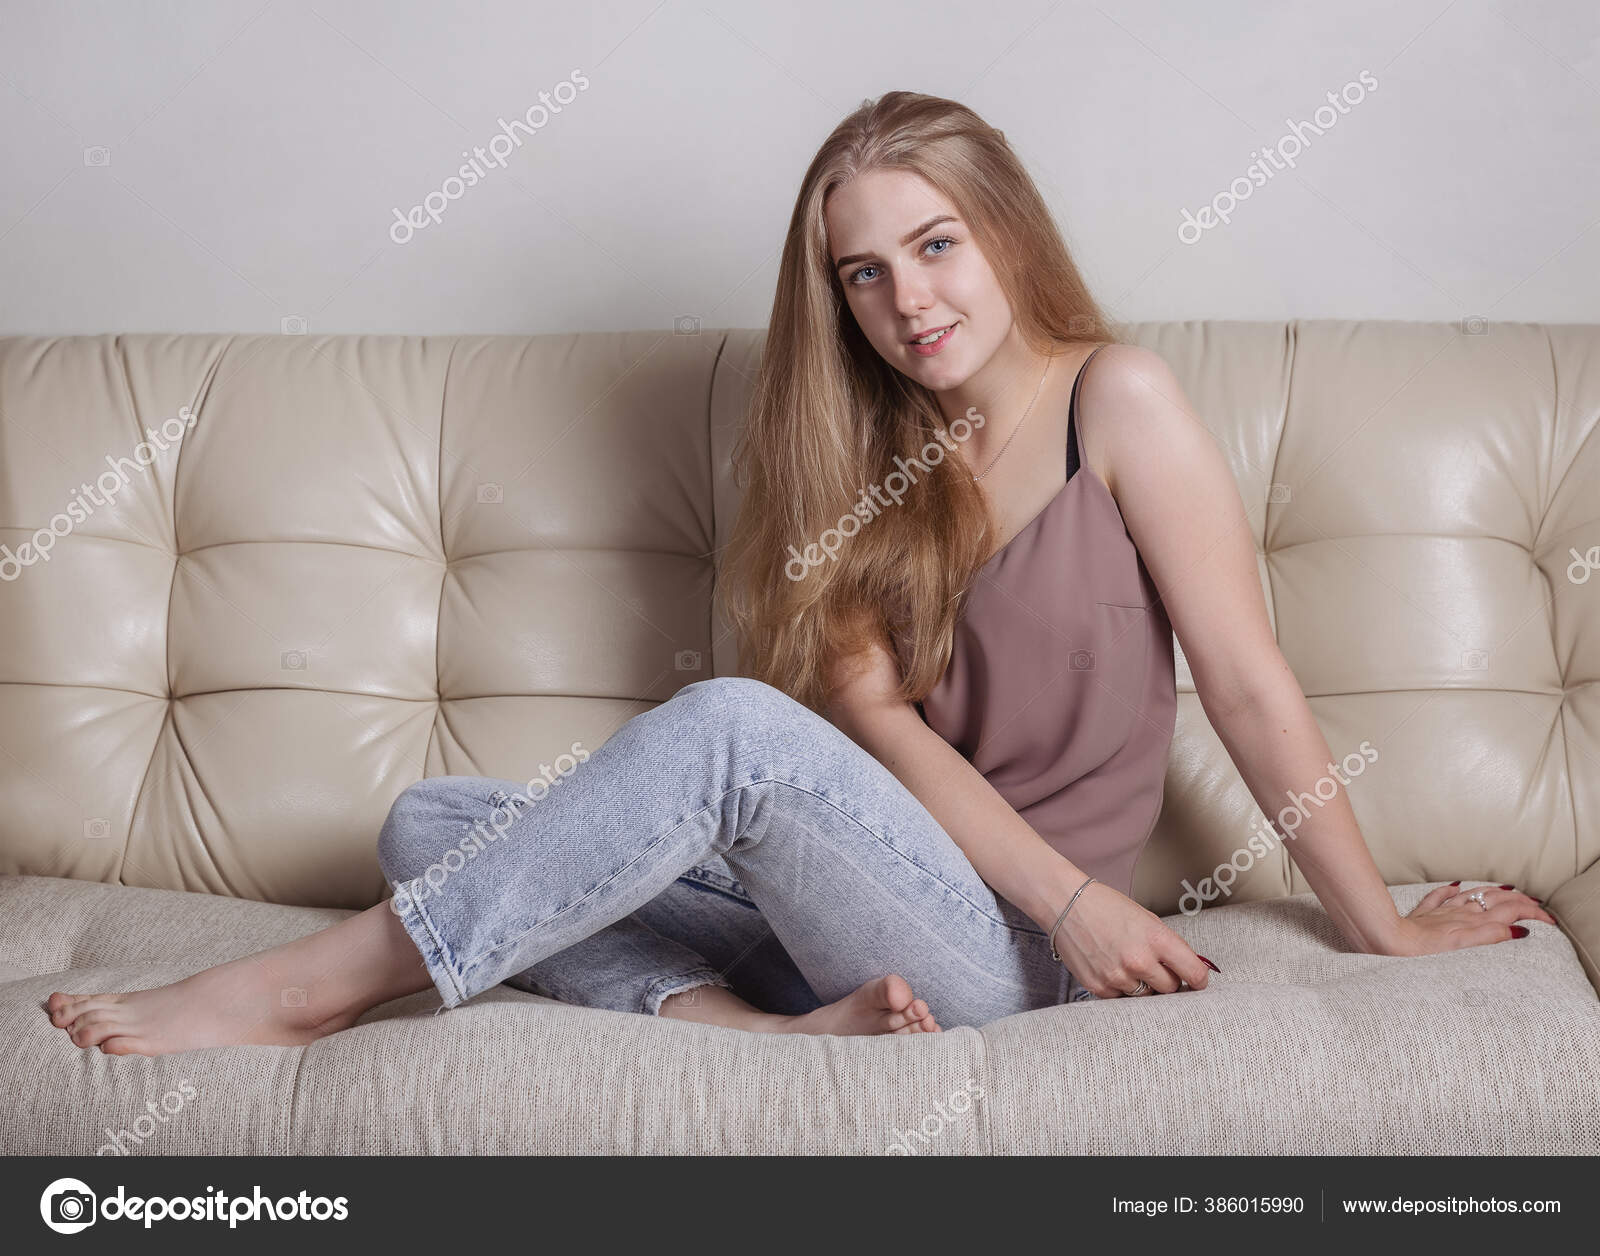 У блондинки с длинными волосами сидящей на диване большой клиторок